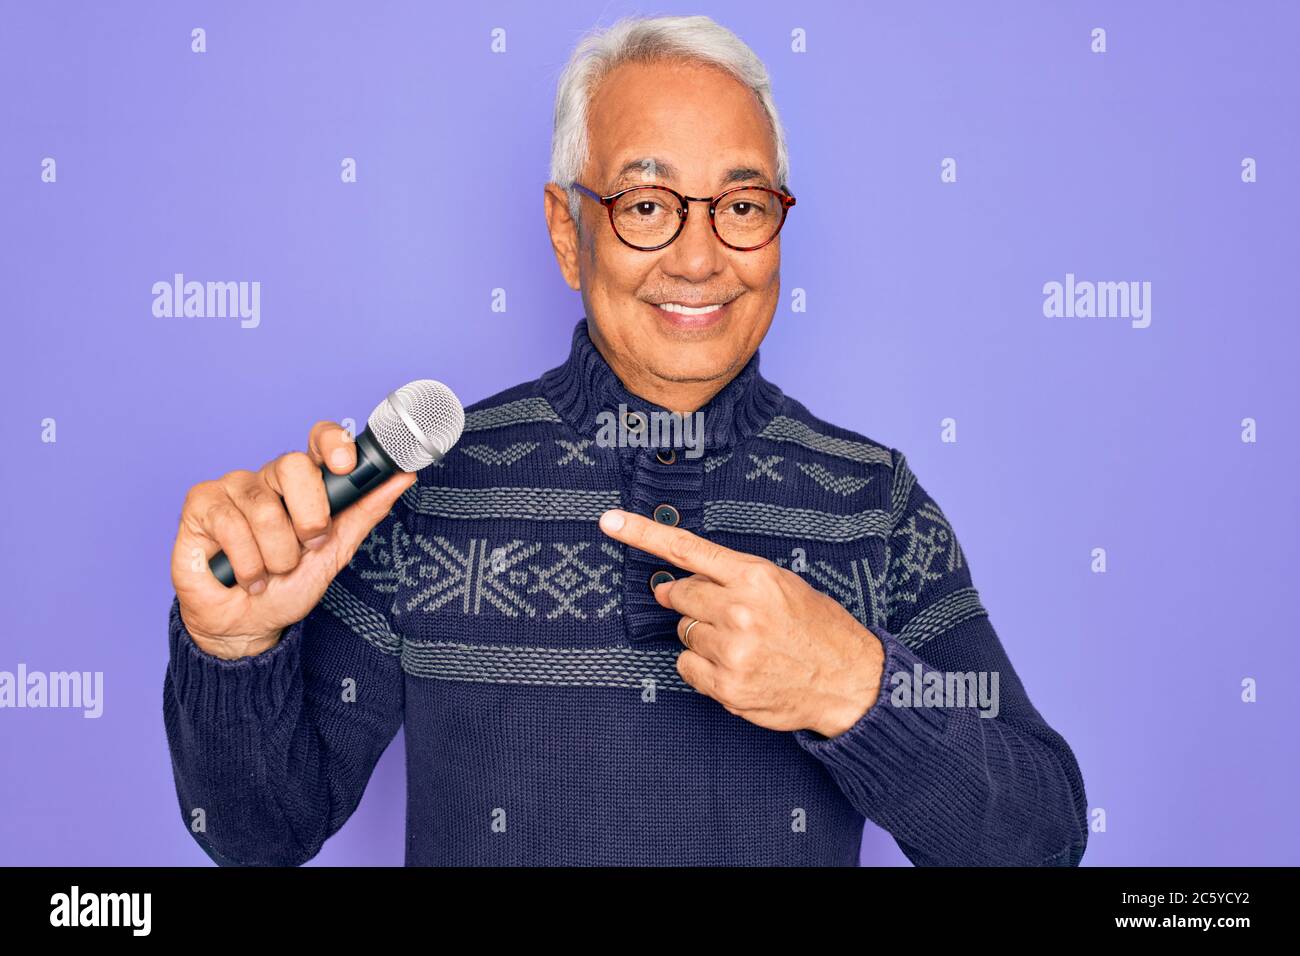 Alter Senior grauhaarige Sänger Mann singen mit Musik Mikrofon über lila  Hintergrund sehr glücklich zeigen mit Hand und Finger Stockfotografie -  Alamy